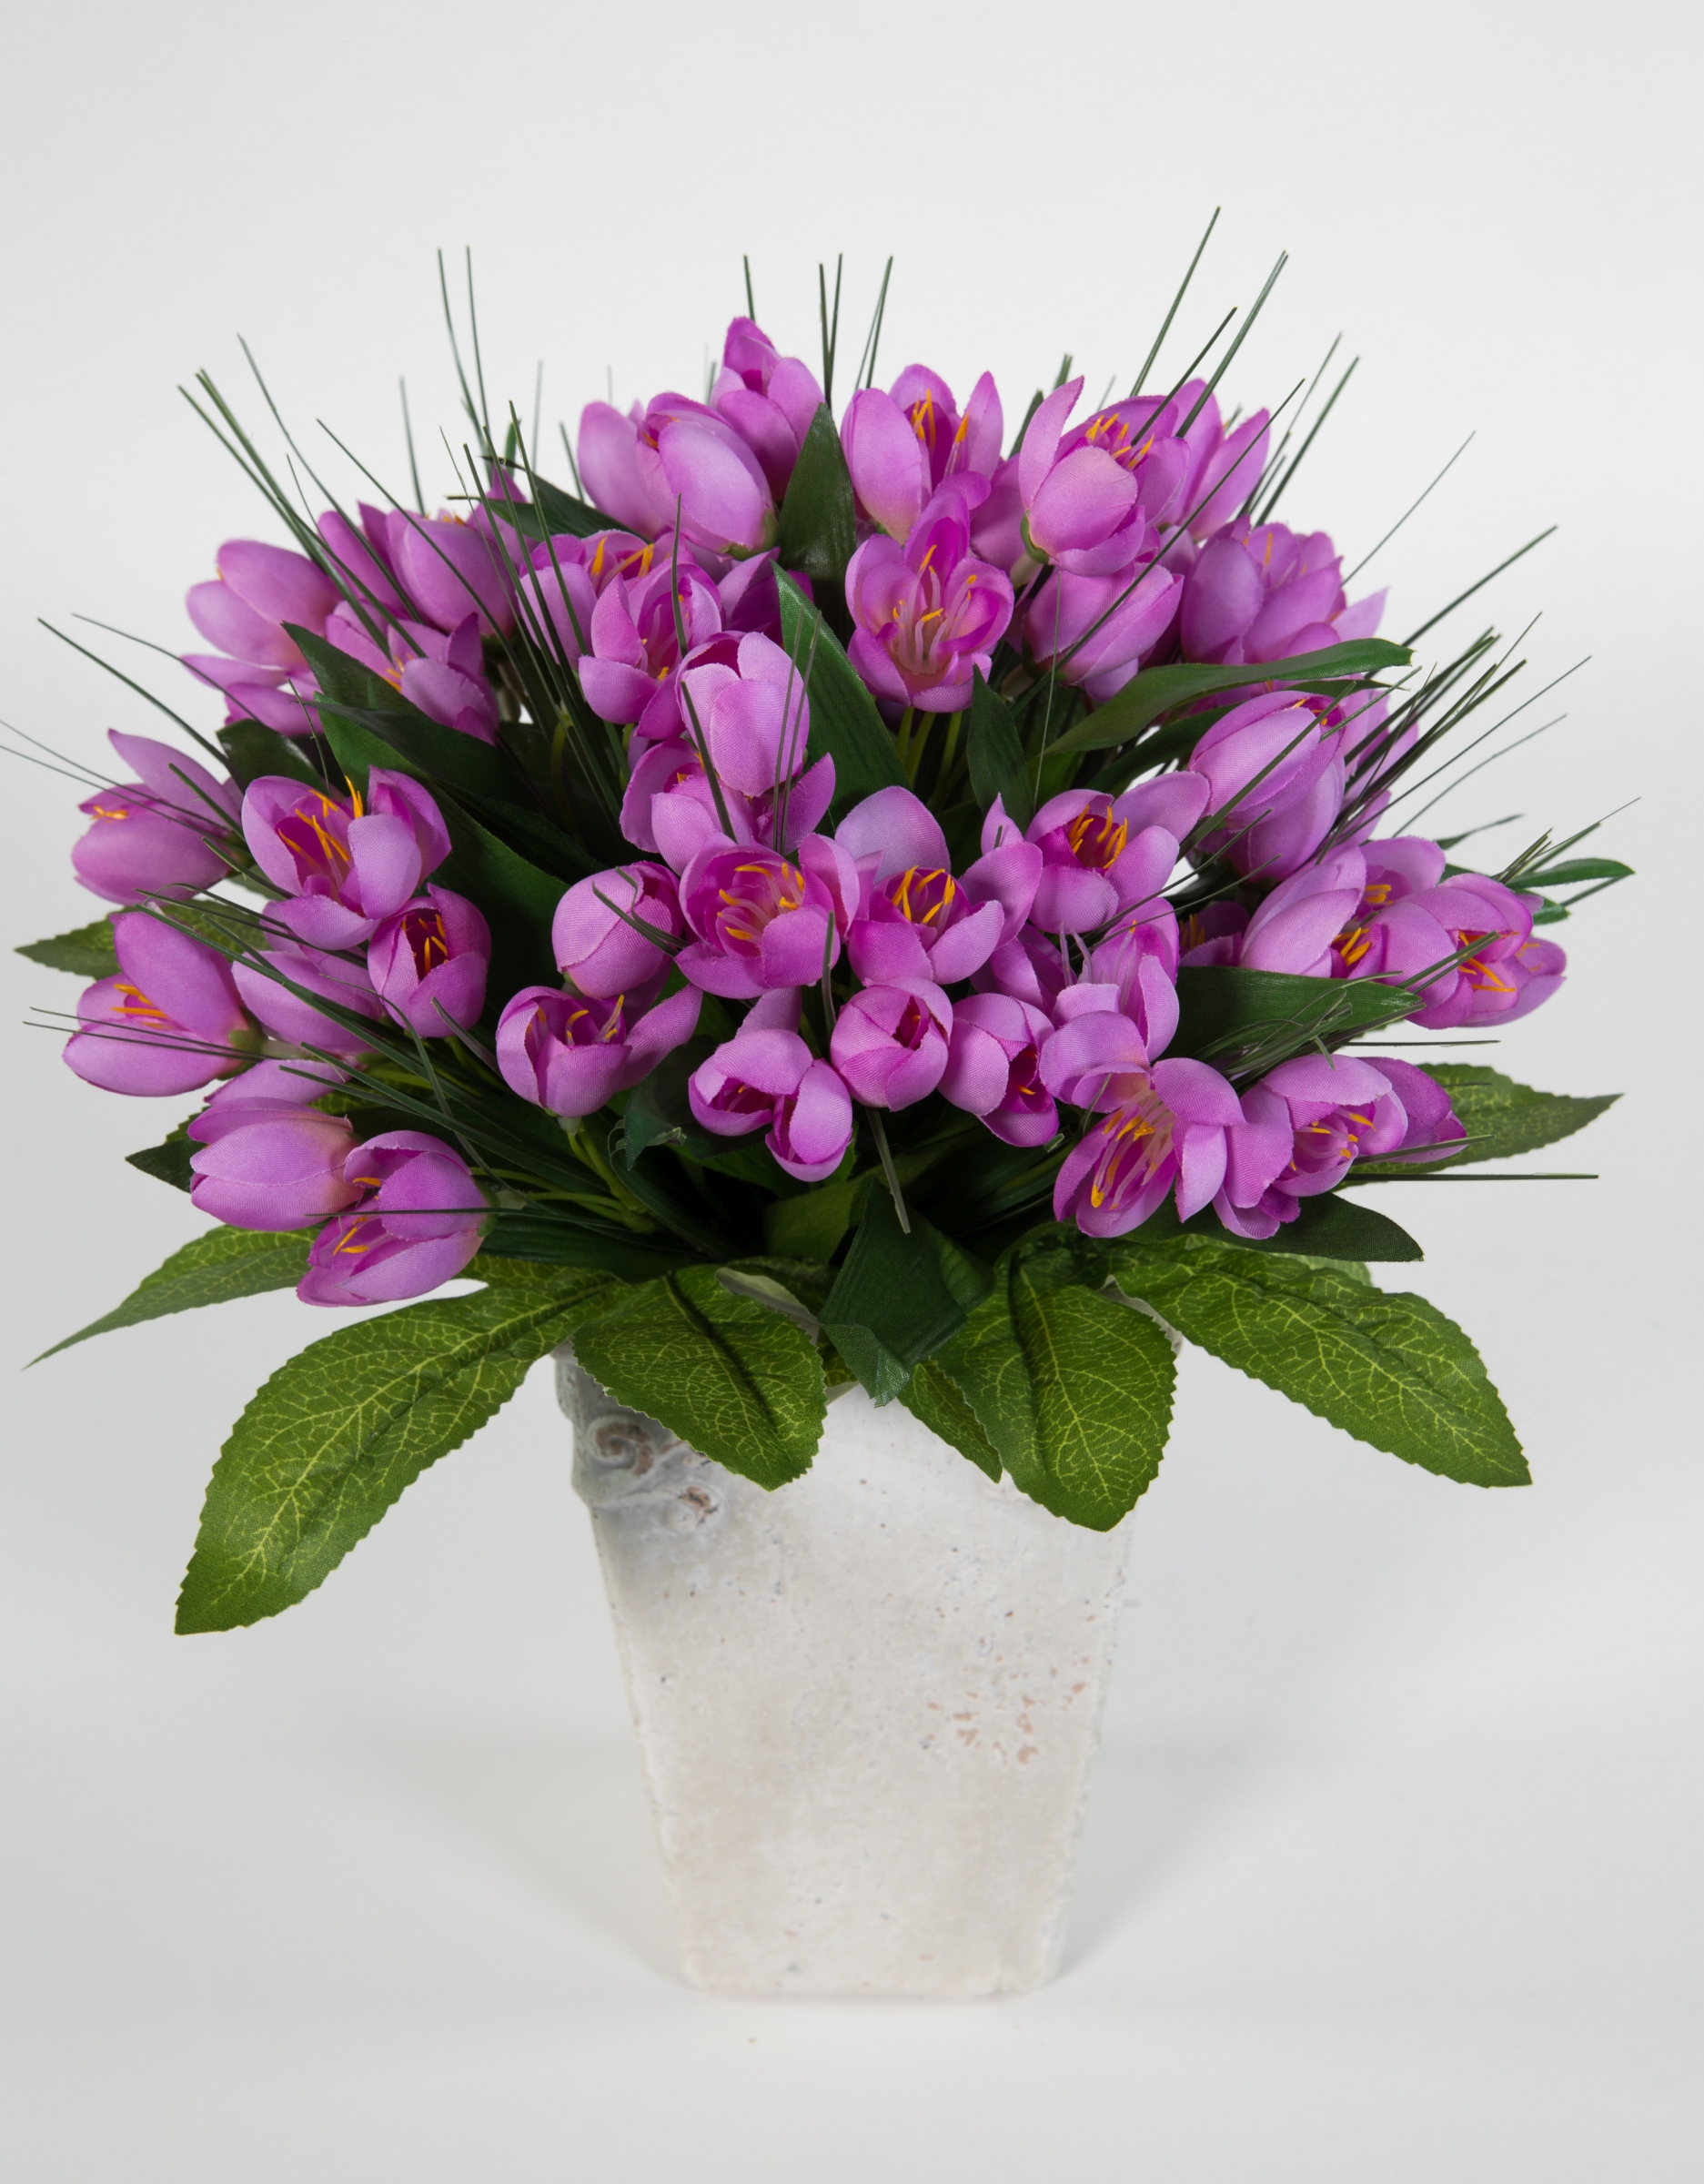 Krokusstrauß 32x30cm lila Frühlingsstrauß Kunstblumen künstlicher handgebundener Strauß Blumenstrauß